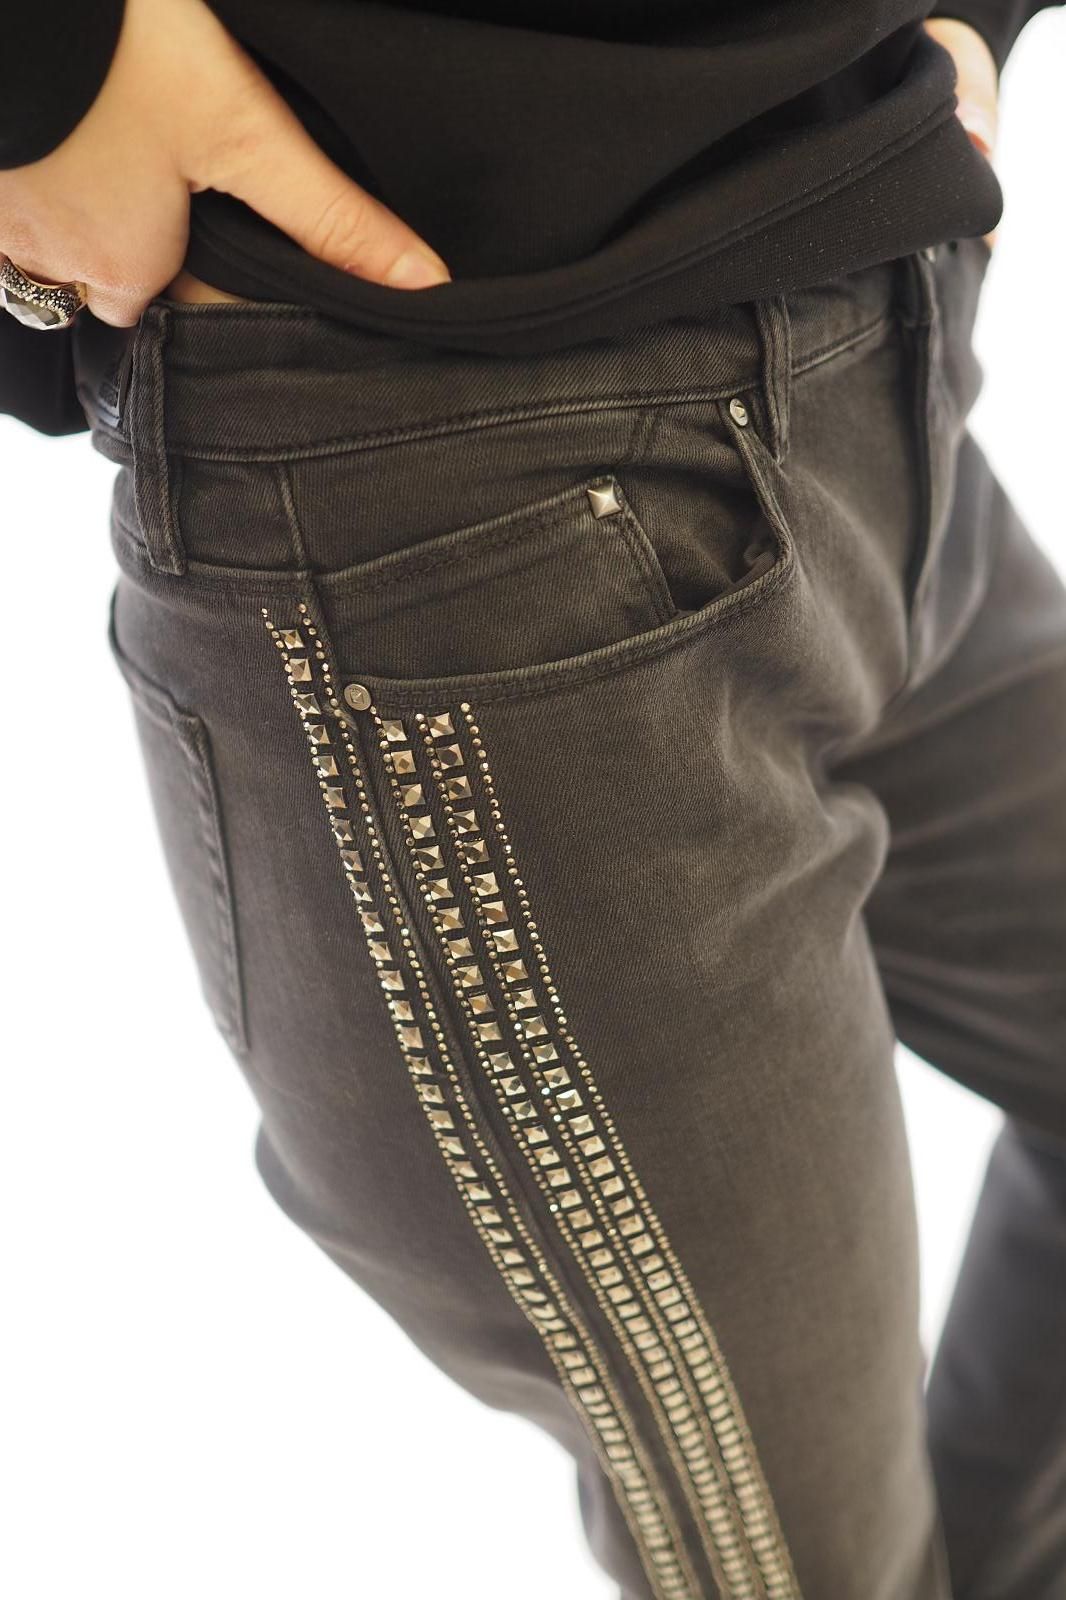 Karl Lagerfeld pantalon Gris femmes (KL-Jeans clous - 1102 jeans gris côté clous) - Marine | Much more than shoes